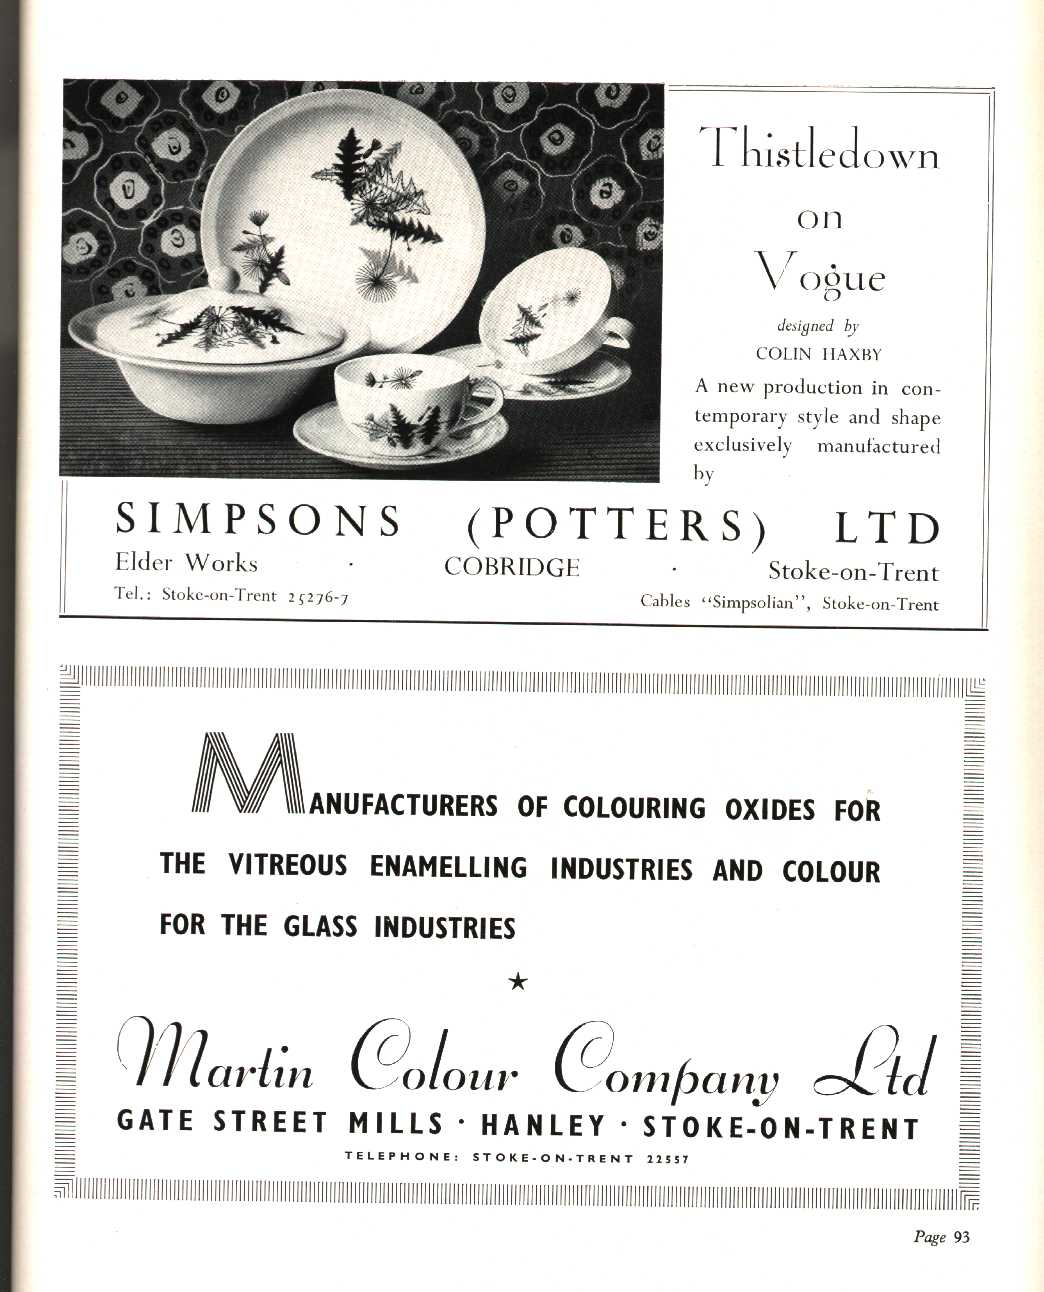 Simpsons (Potters) Ltd. (Cobridge), Martin Colour Company Ltd. (Hanley) (colours, glazes, minerals)